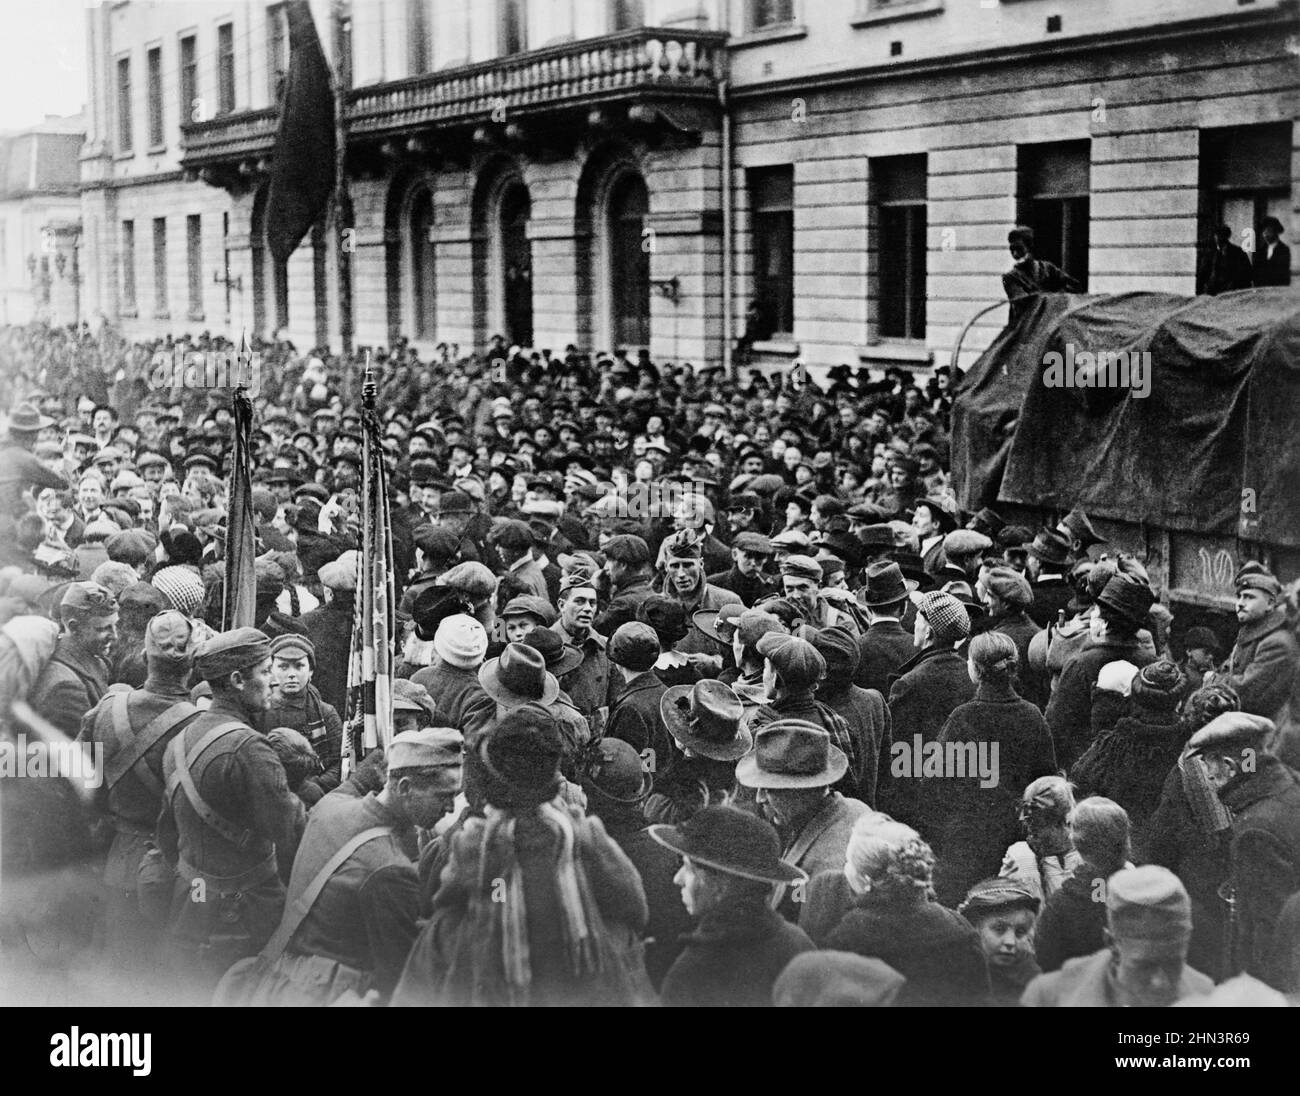 Le truppe americane a Parigi formarono sfilate improvvisate per le strade di Parigi il giorno dell'armistizio. Qui sono completamente circondati da civili francesi. F Foto Stock